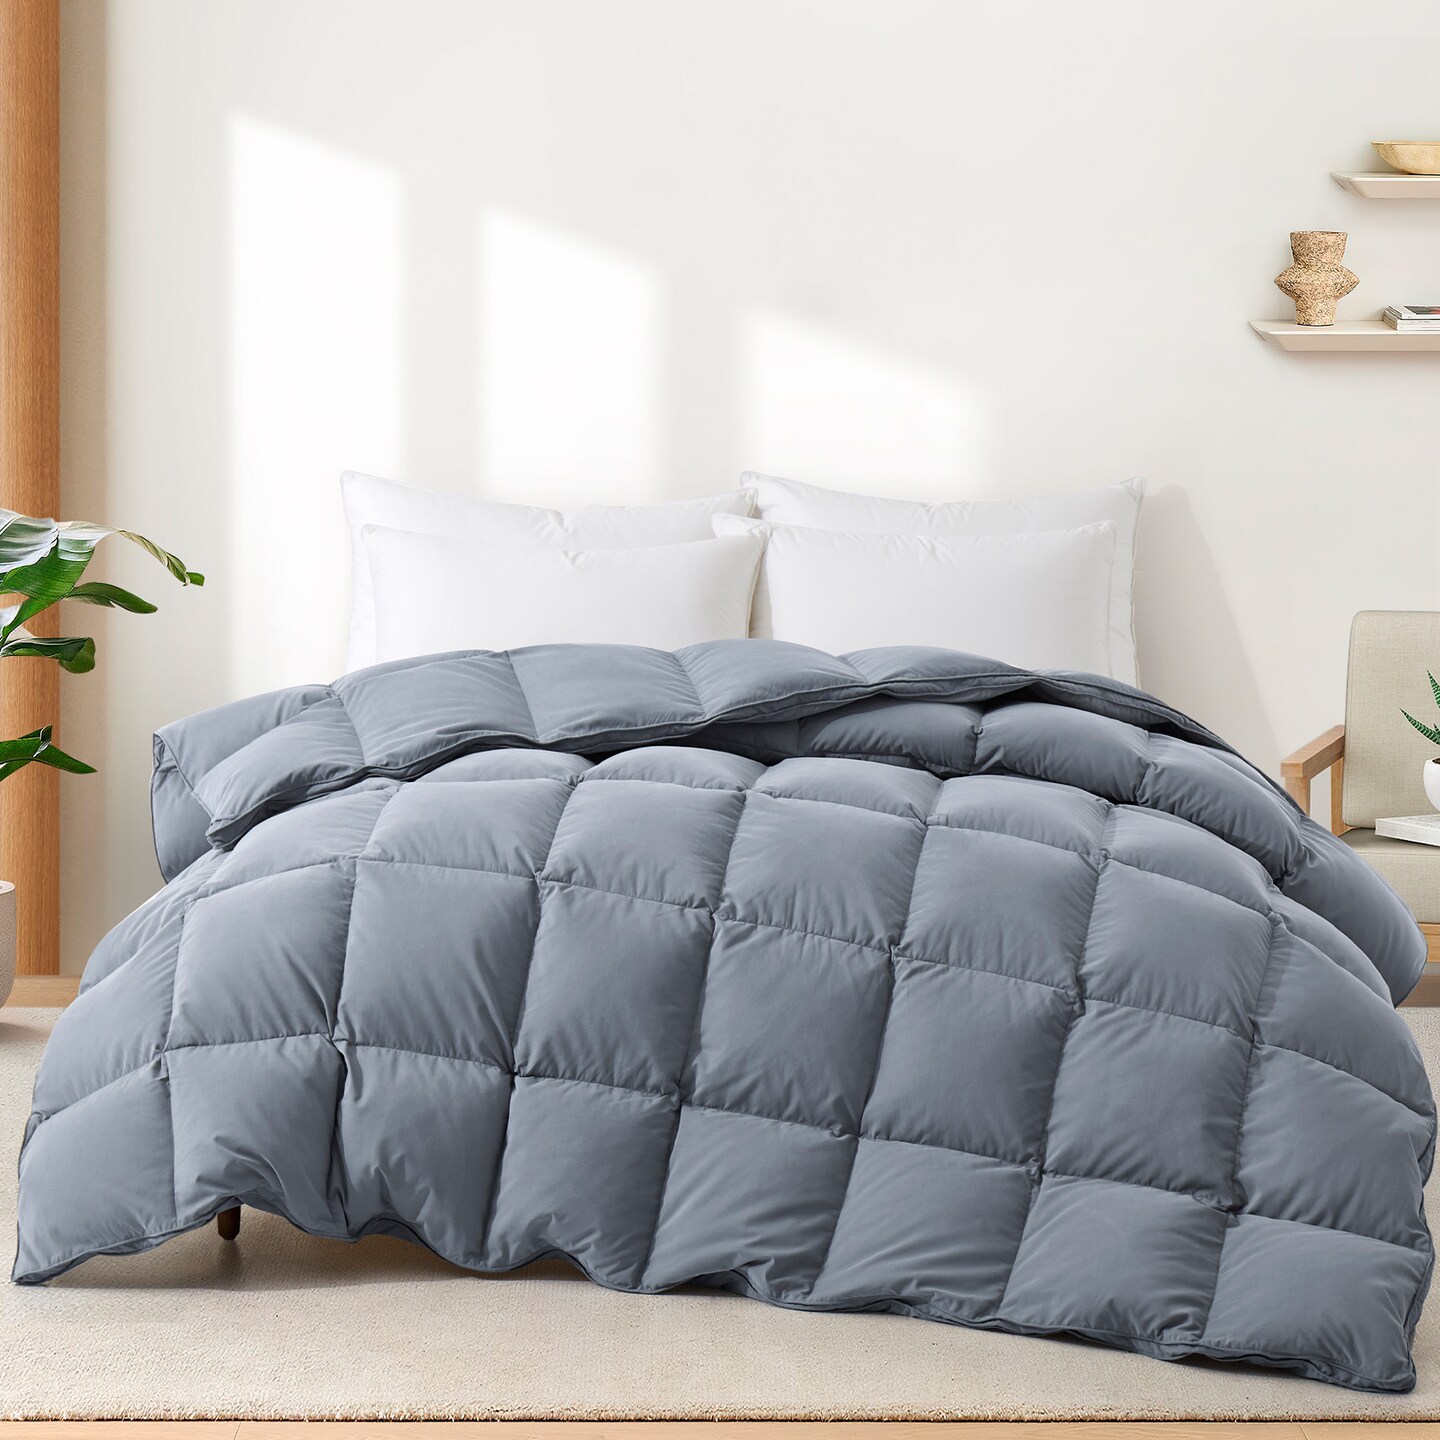 Puredown Bedding Comforter Duvet Insert - Goose Down Comforter with Corner Tabs